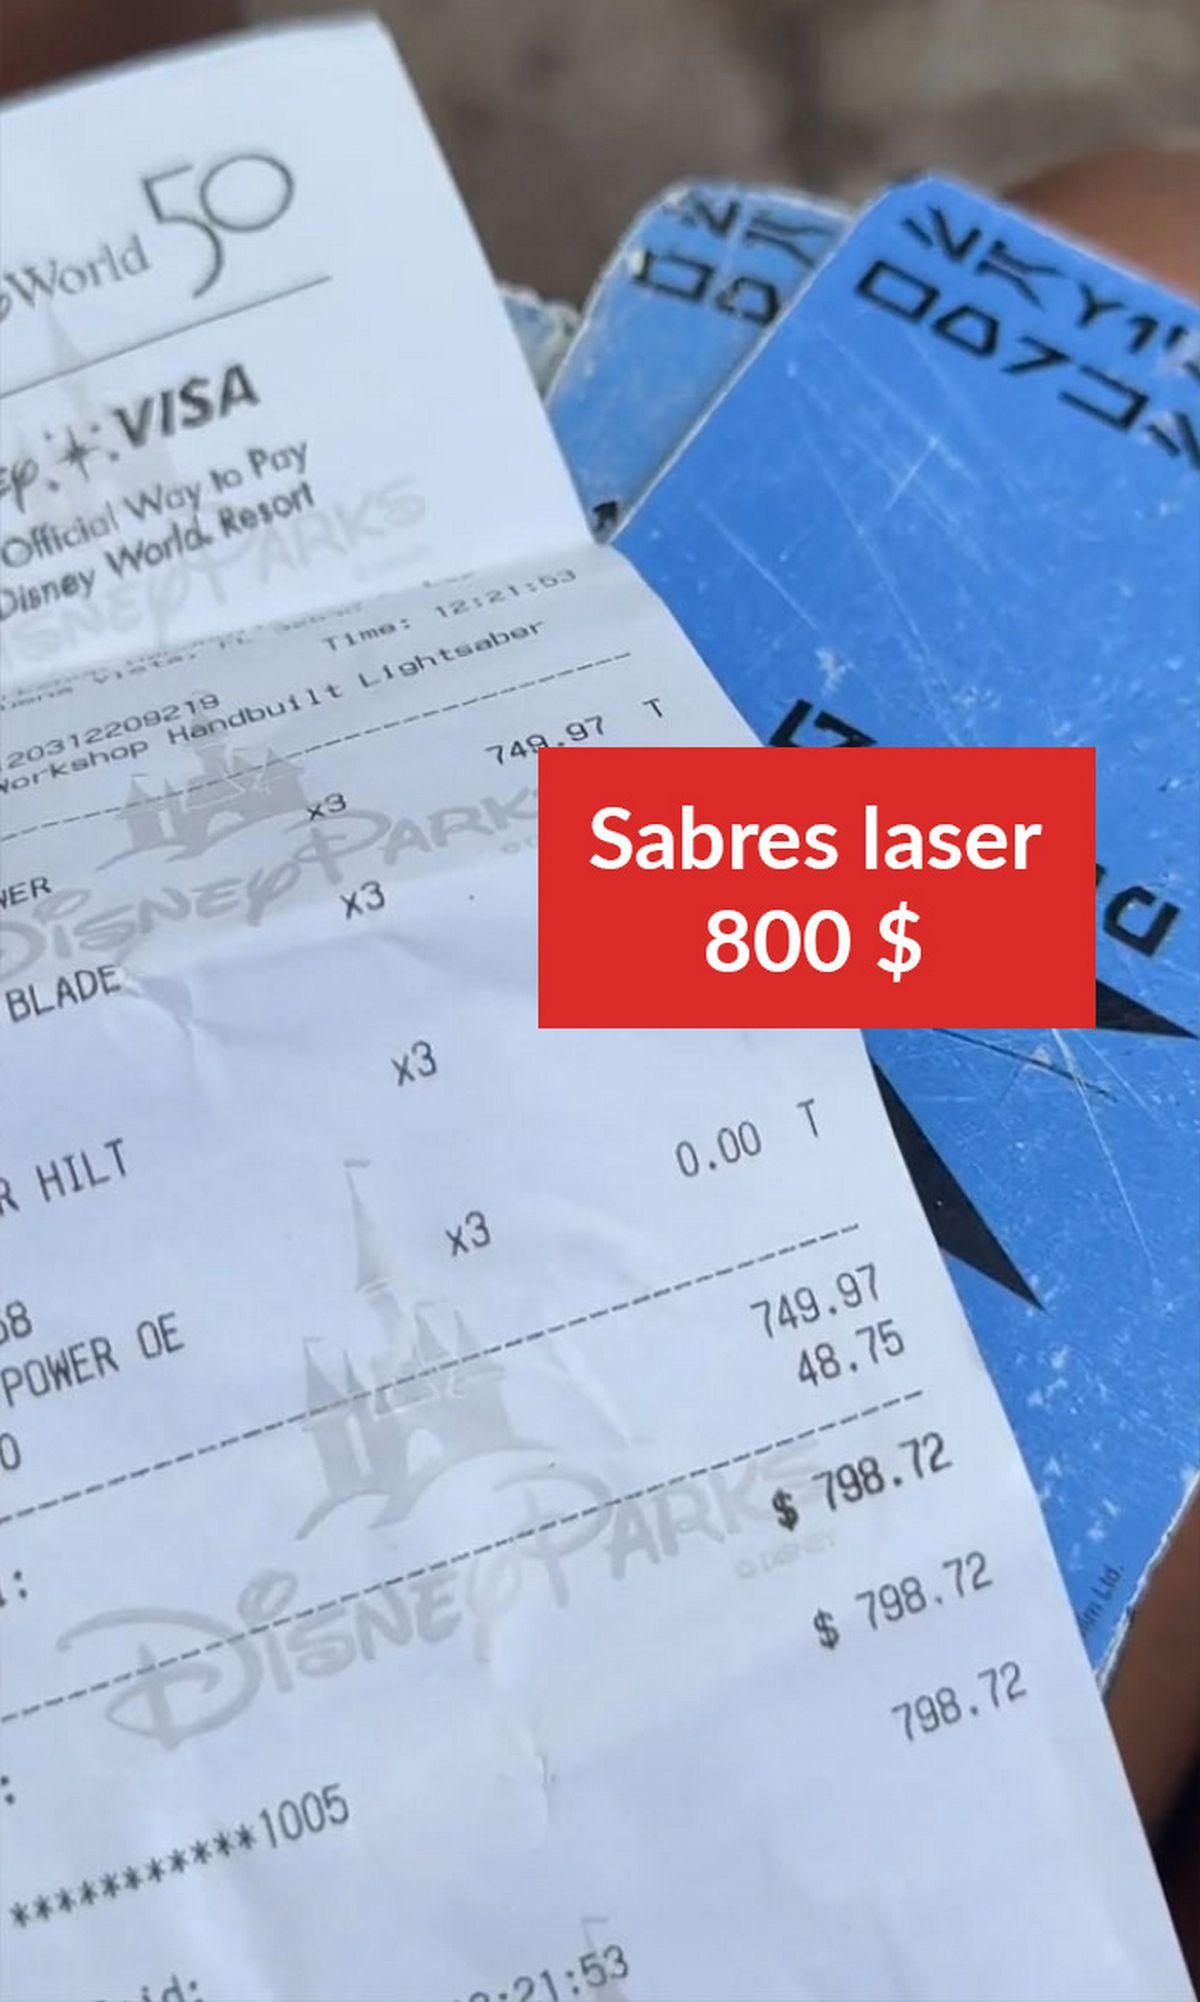 Sabres laser : 800 $ (761 €)